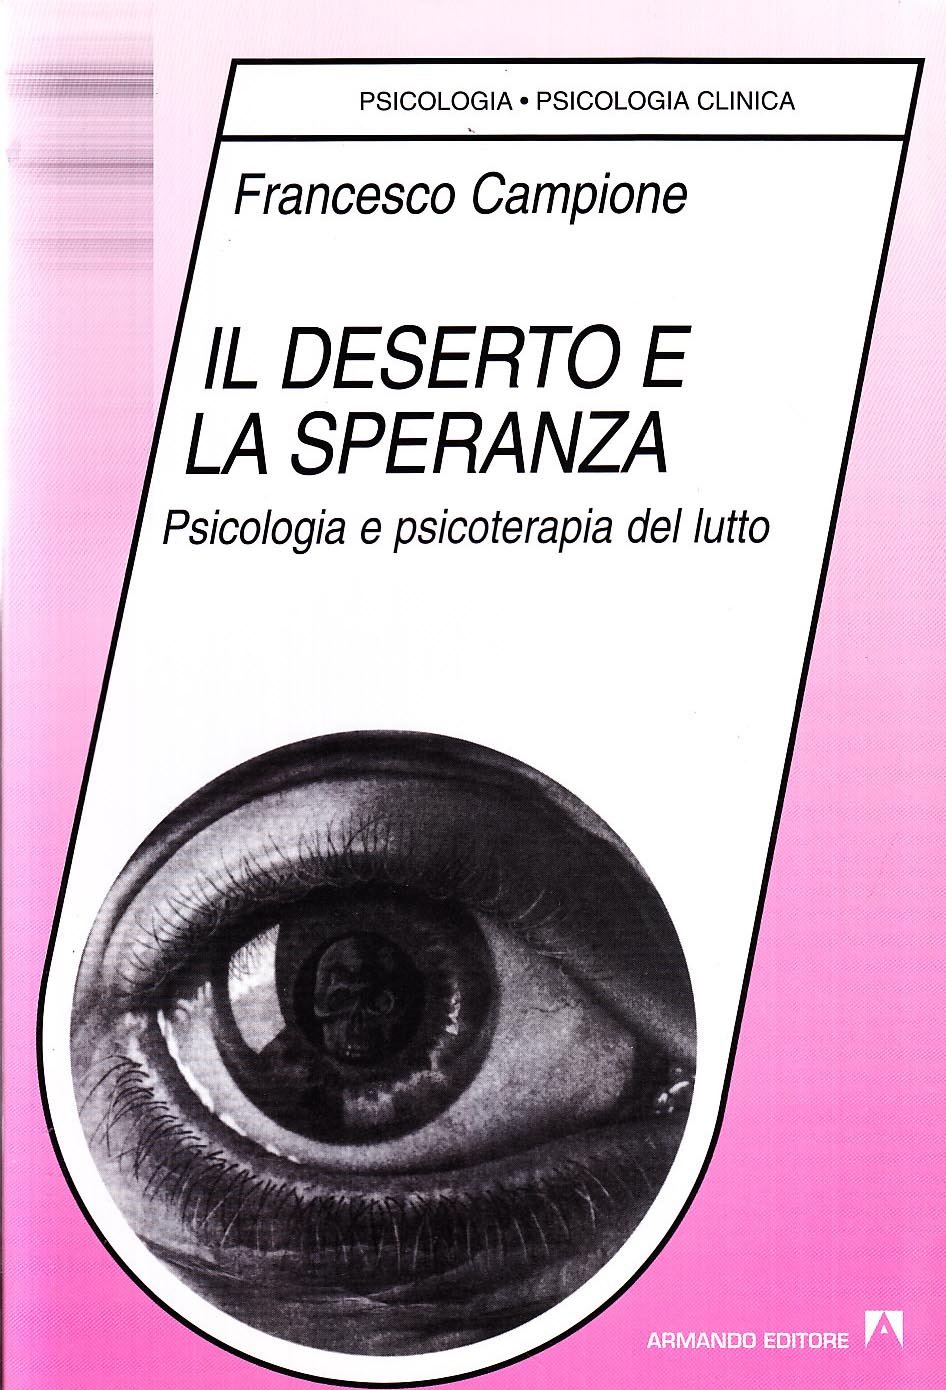 Campione F. (1990). Il deserto e la speranza. Psicologia e psicoterapia del lutto, Armando editore, Roma